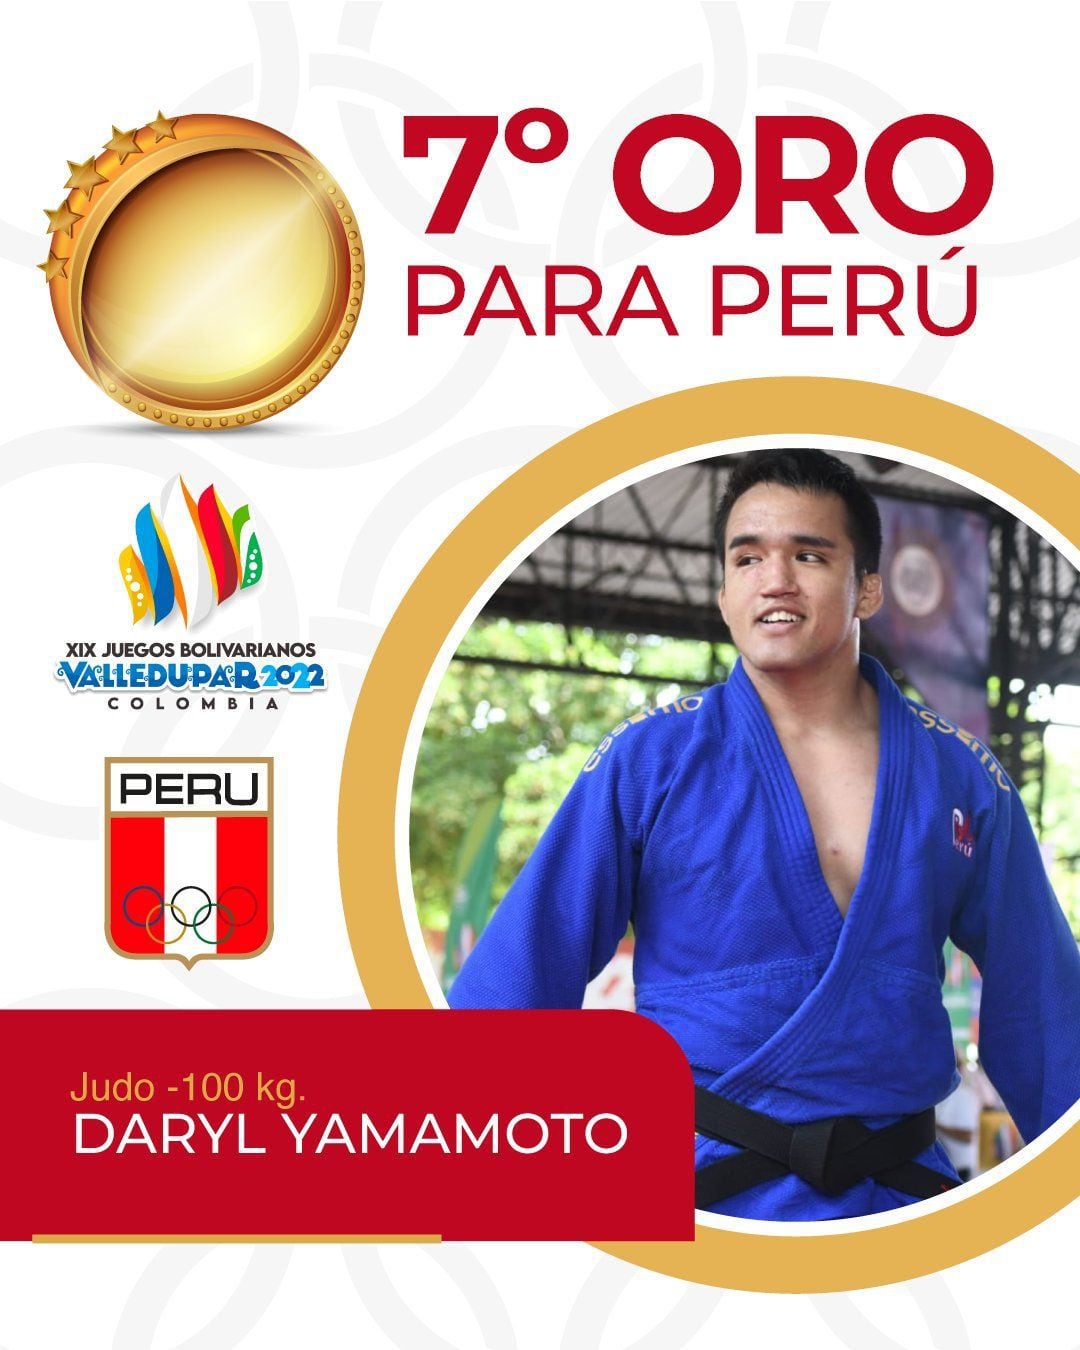 Daryl Yamamoto ganó medalla de oro para Perú en judo. (Foto: Twitter del Comité Olímpico Perú)